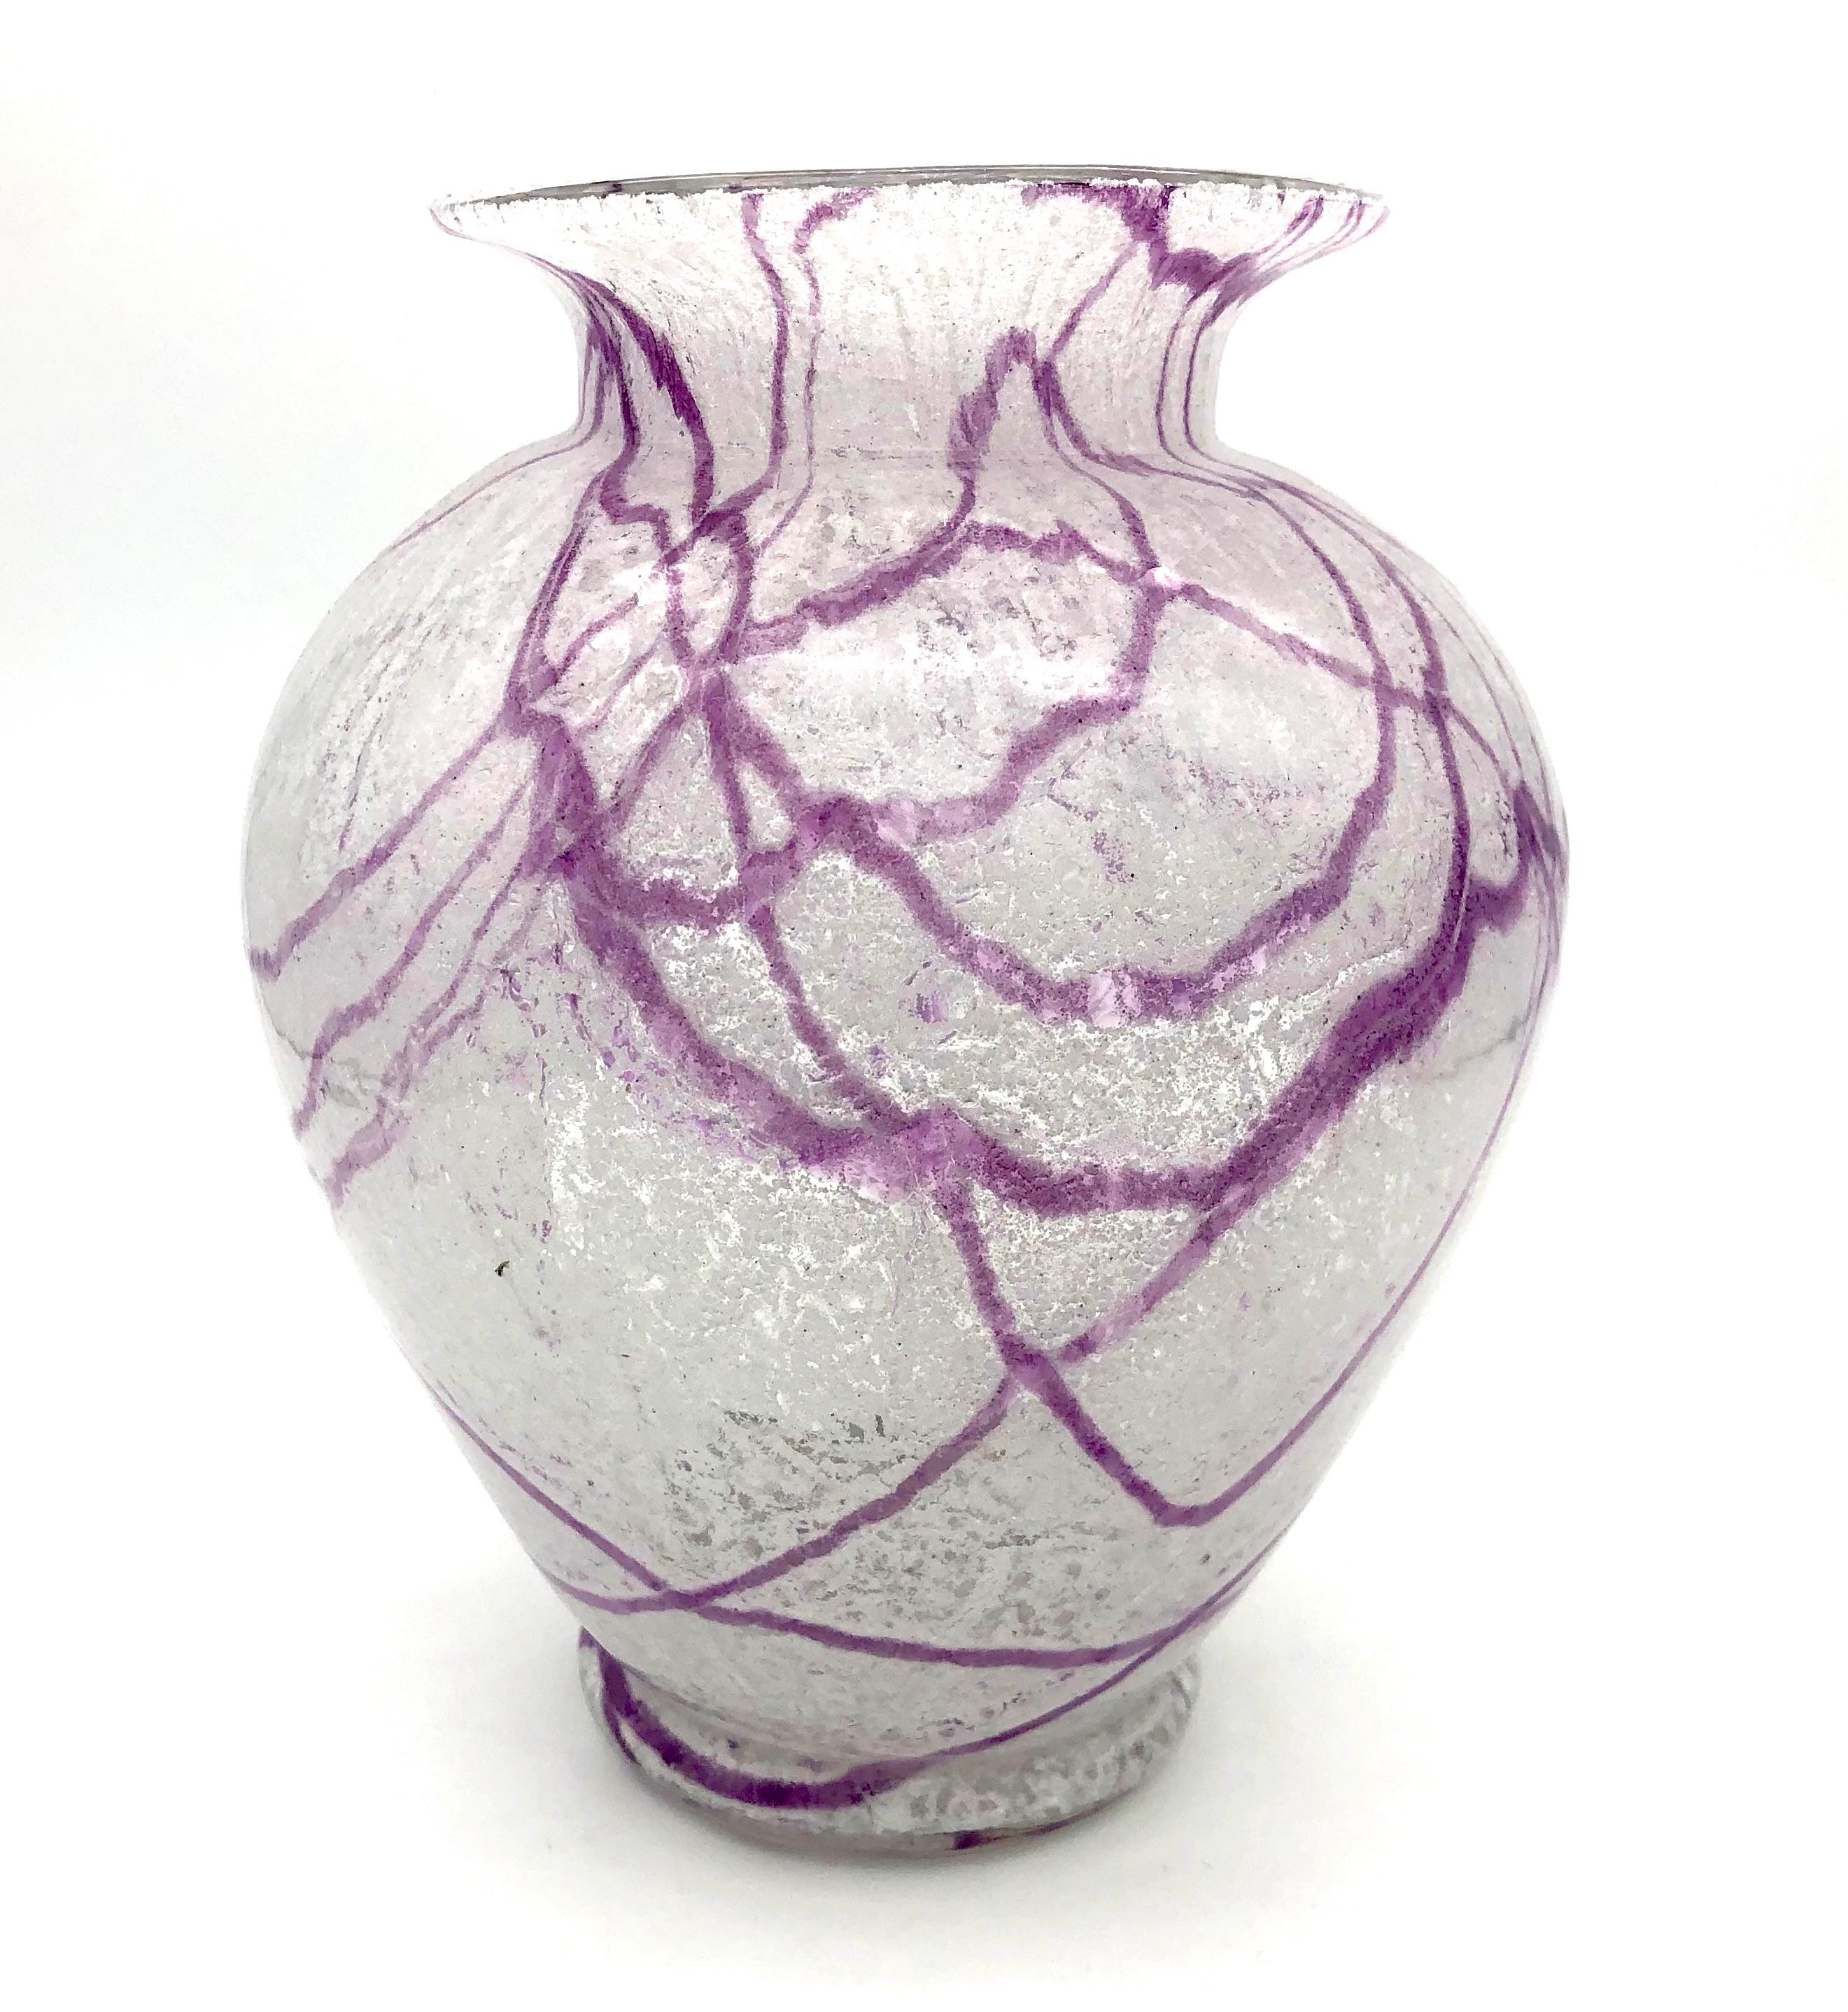 Insolite vase en verre mousse Loetz des années 1930 avec une ligne violette abstraite.